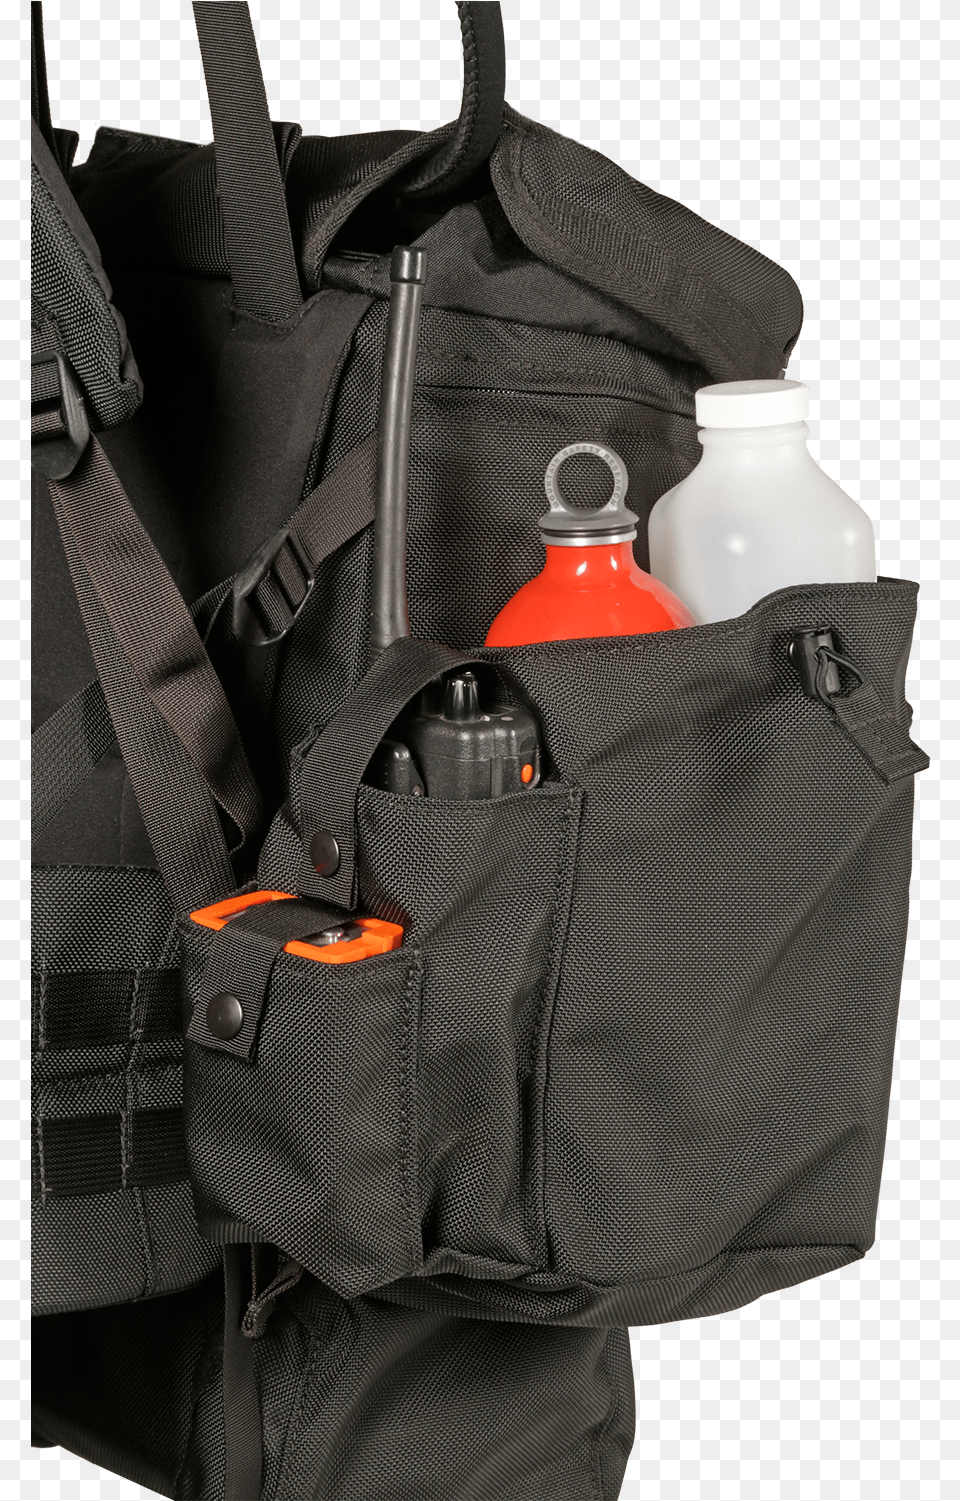 Alpha 17 Fire Line Pack System Diaper Bag, Backpack, Clothing, Coat, Jacket Png